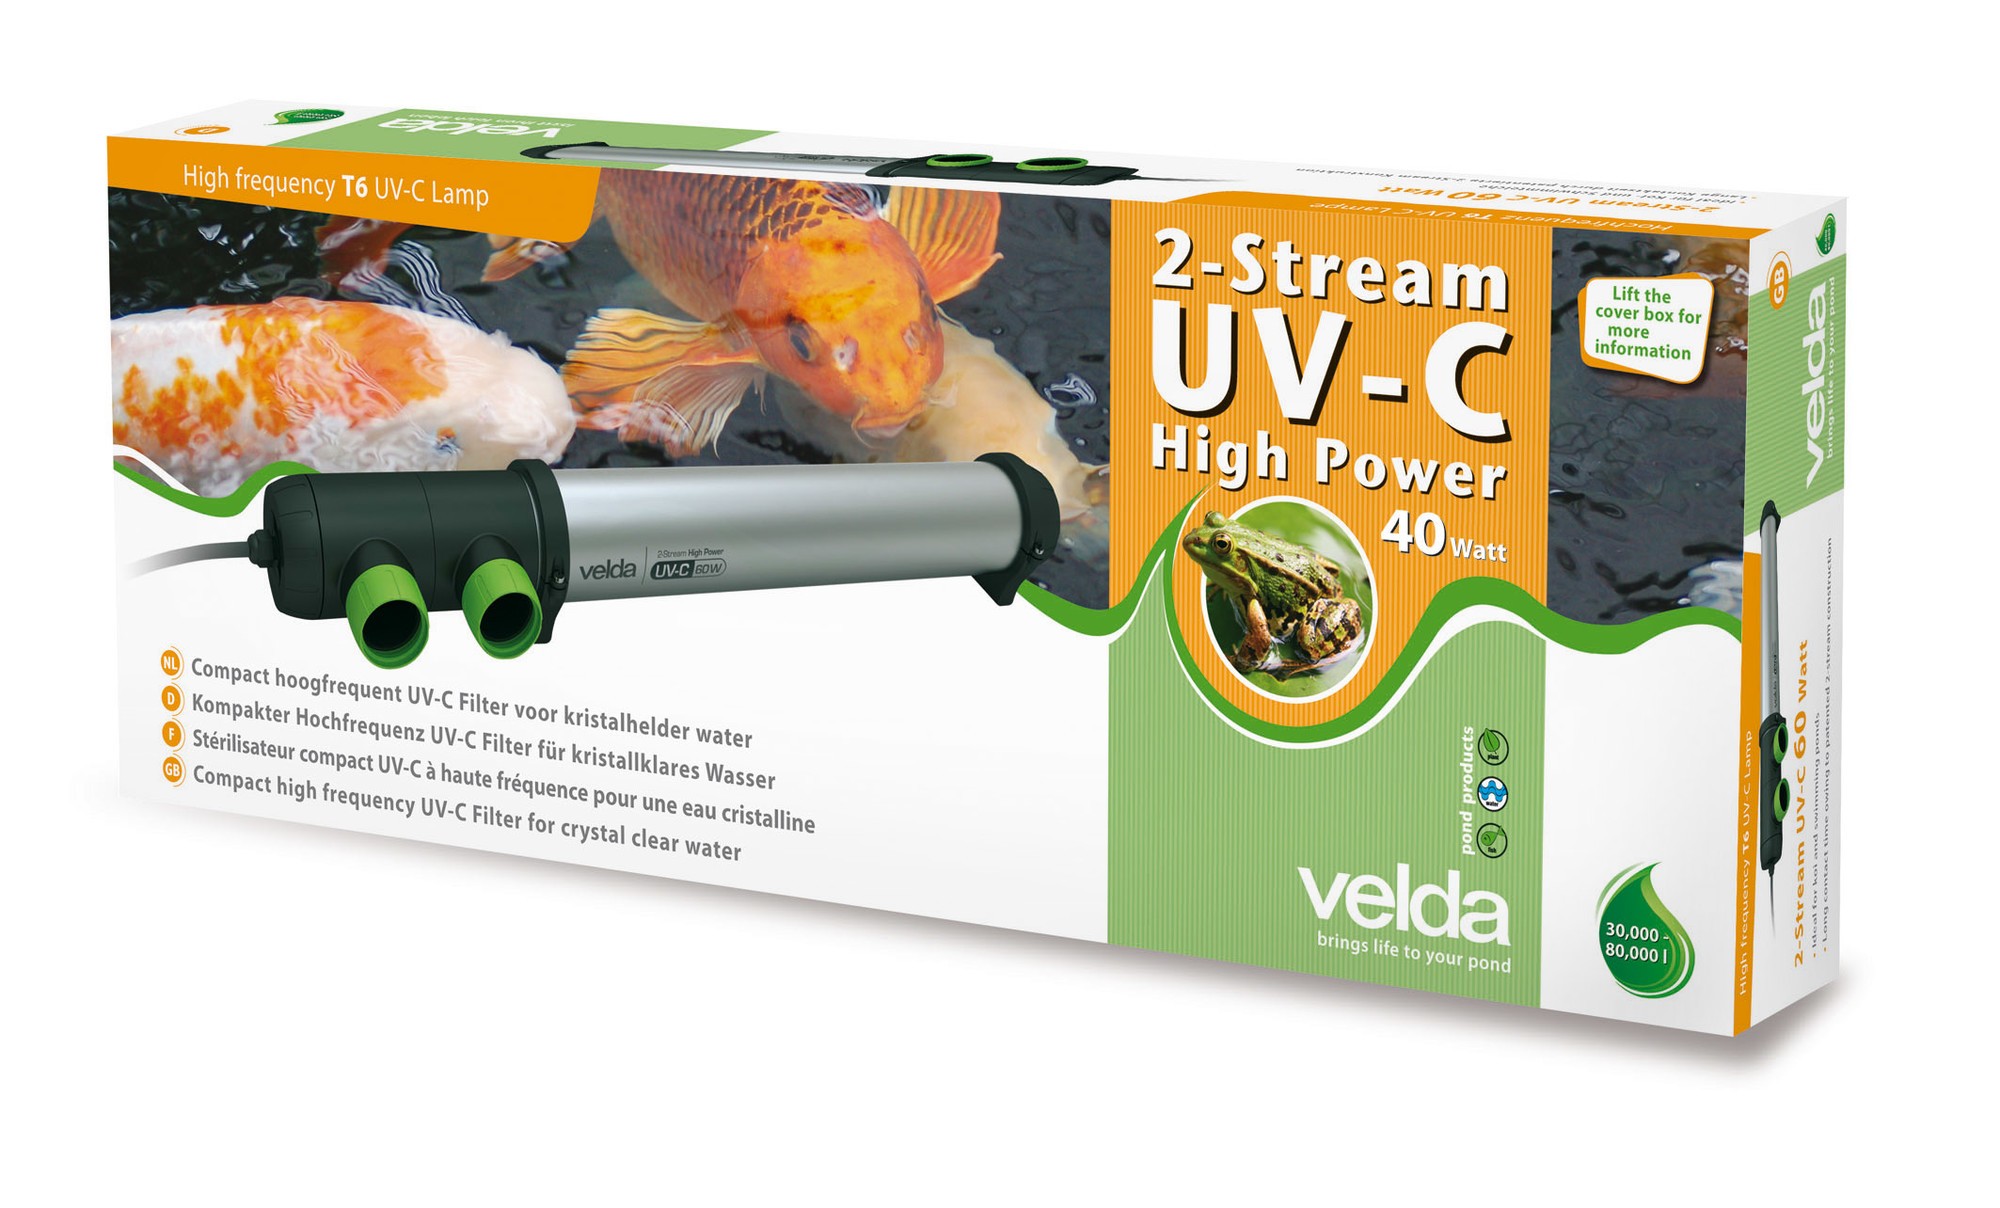 2- Stream High Power 40 Watt UV-C Filter - Velda